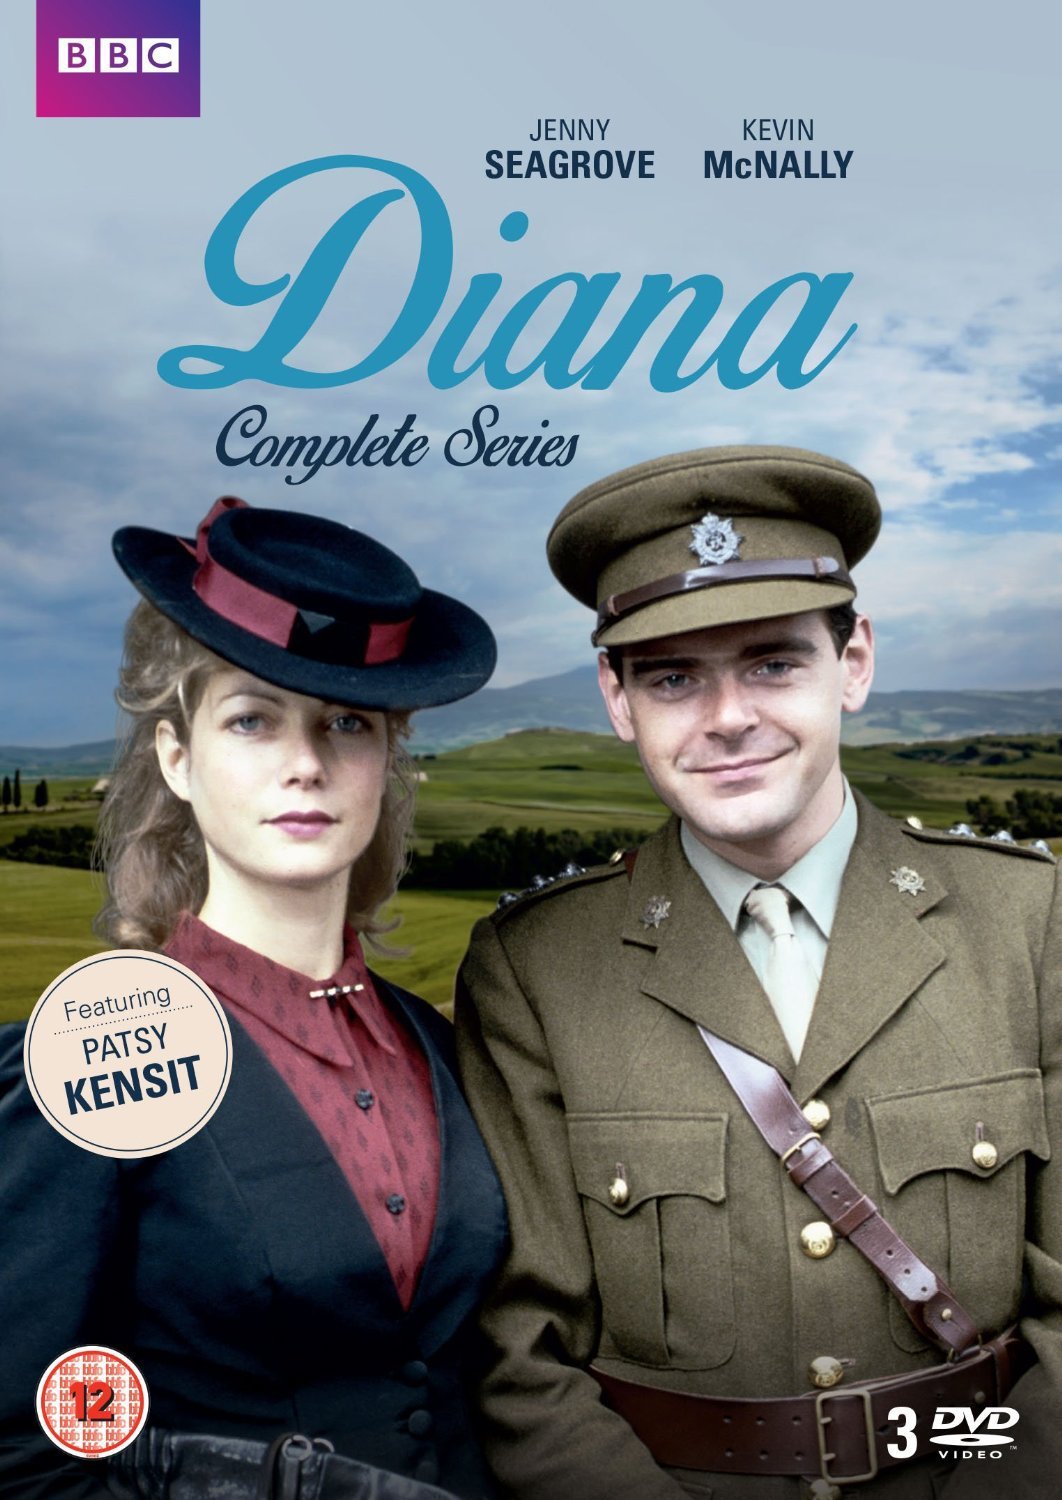 Diana (DVD)